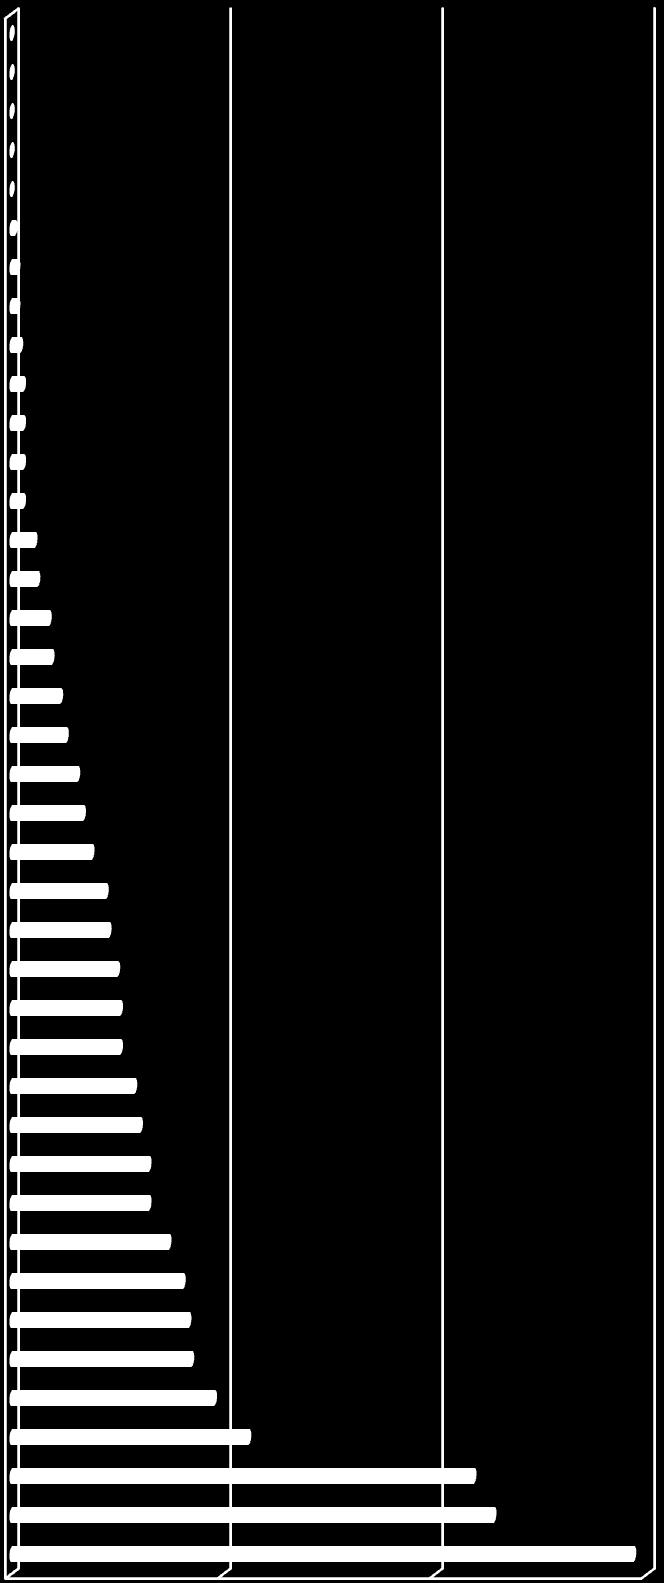 Wykres Nr 11 Oferty pracy zgłoszone w 2012 roku - grupy wielkie (udział procentowy) Sprzedawcy uliczni i pracownicy Rolnicy i rybacy pracujący na własne Kierownicy w branży hotelarskiej, Kierownicy